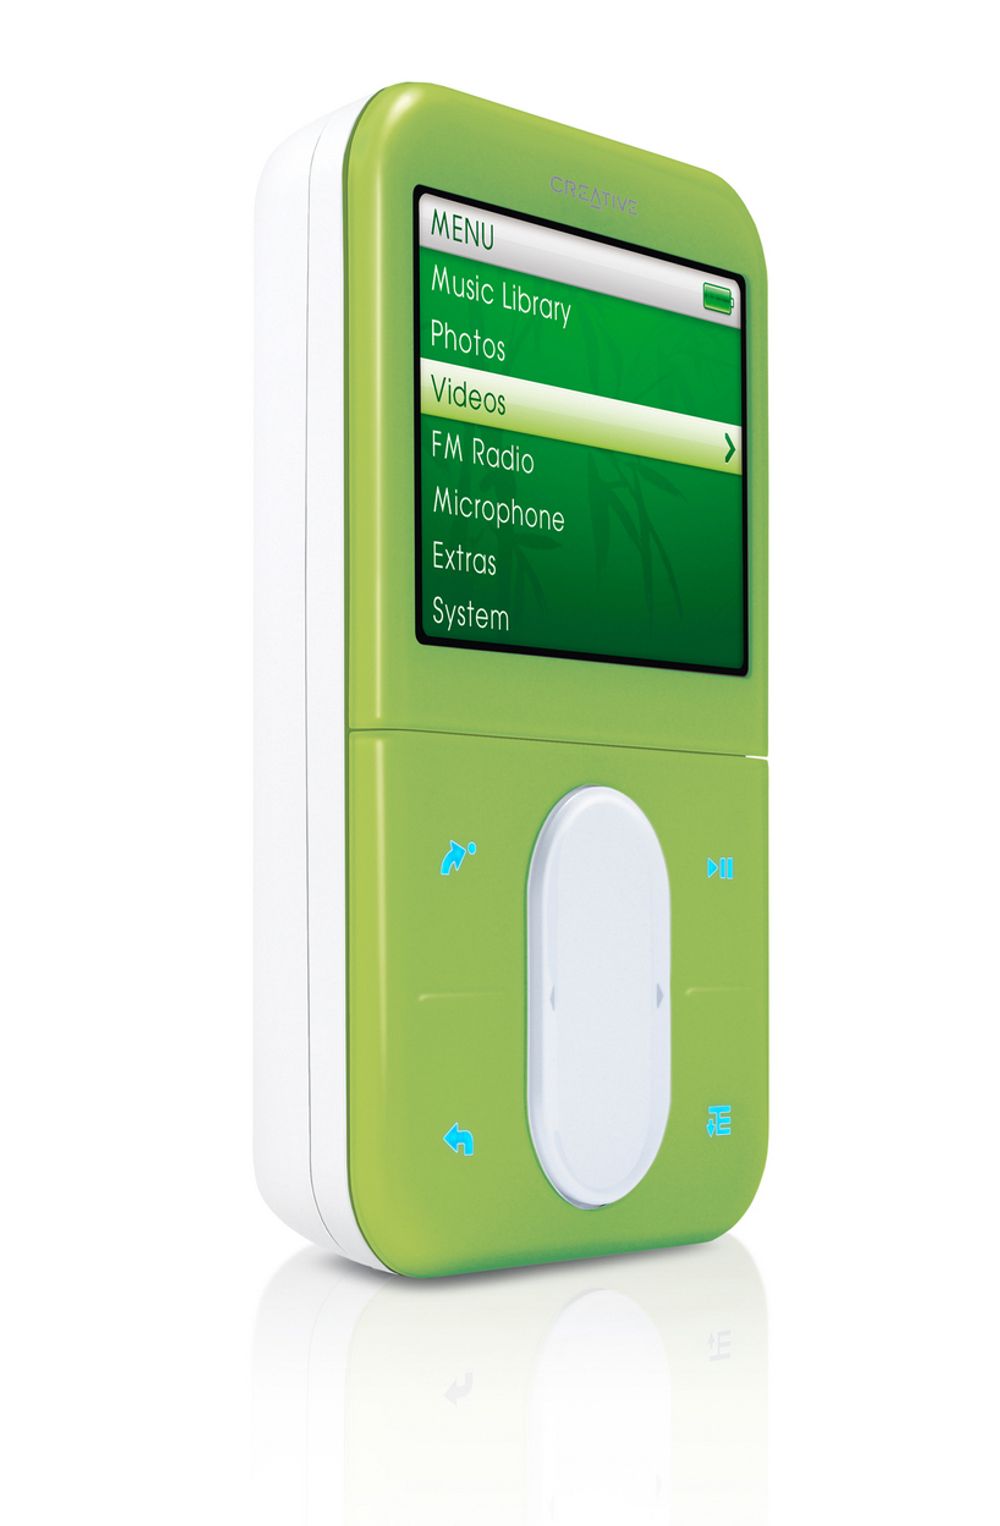 Creative truer Apple med søksmål. De mener Apple med sin iPod har etterliknet deres navigasjonteknikk. Zen Vision:M ser på sin side ut til å ha tatt en eplekjekk farge og design.